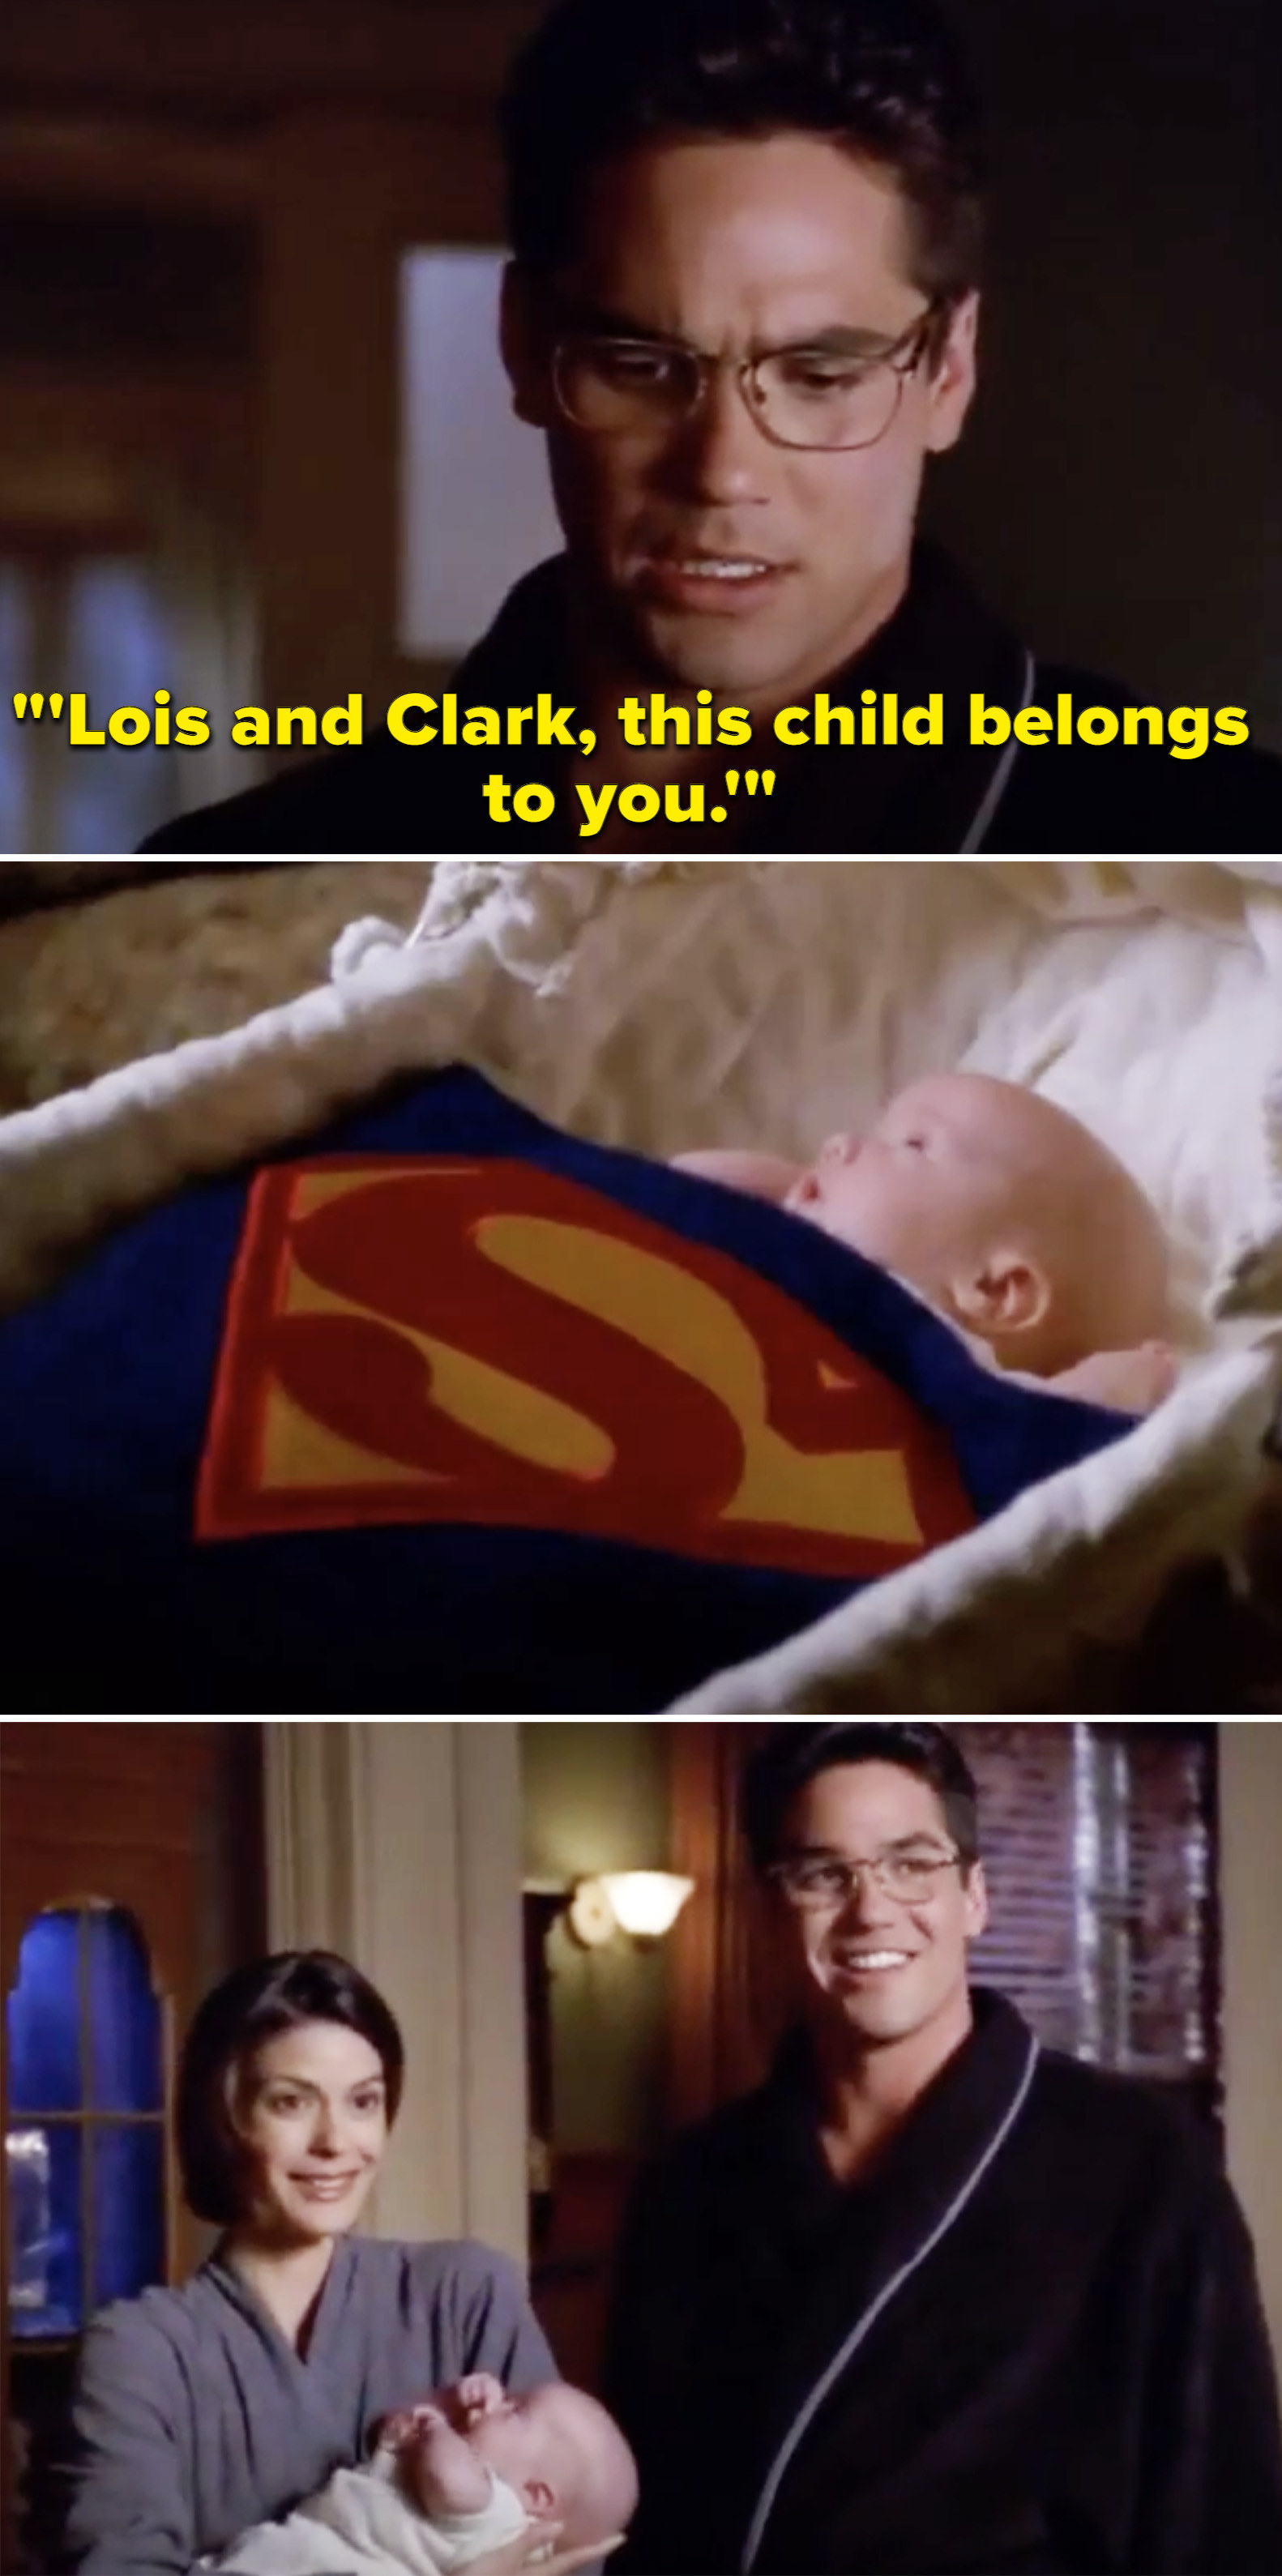 克拉克读一封信,剩下的婴儿说,“路易斯和克拉克,这孩子属于你。